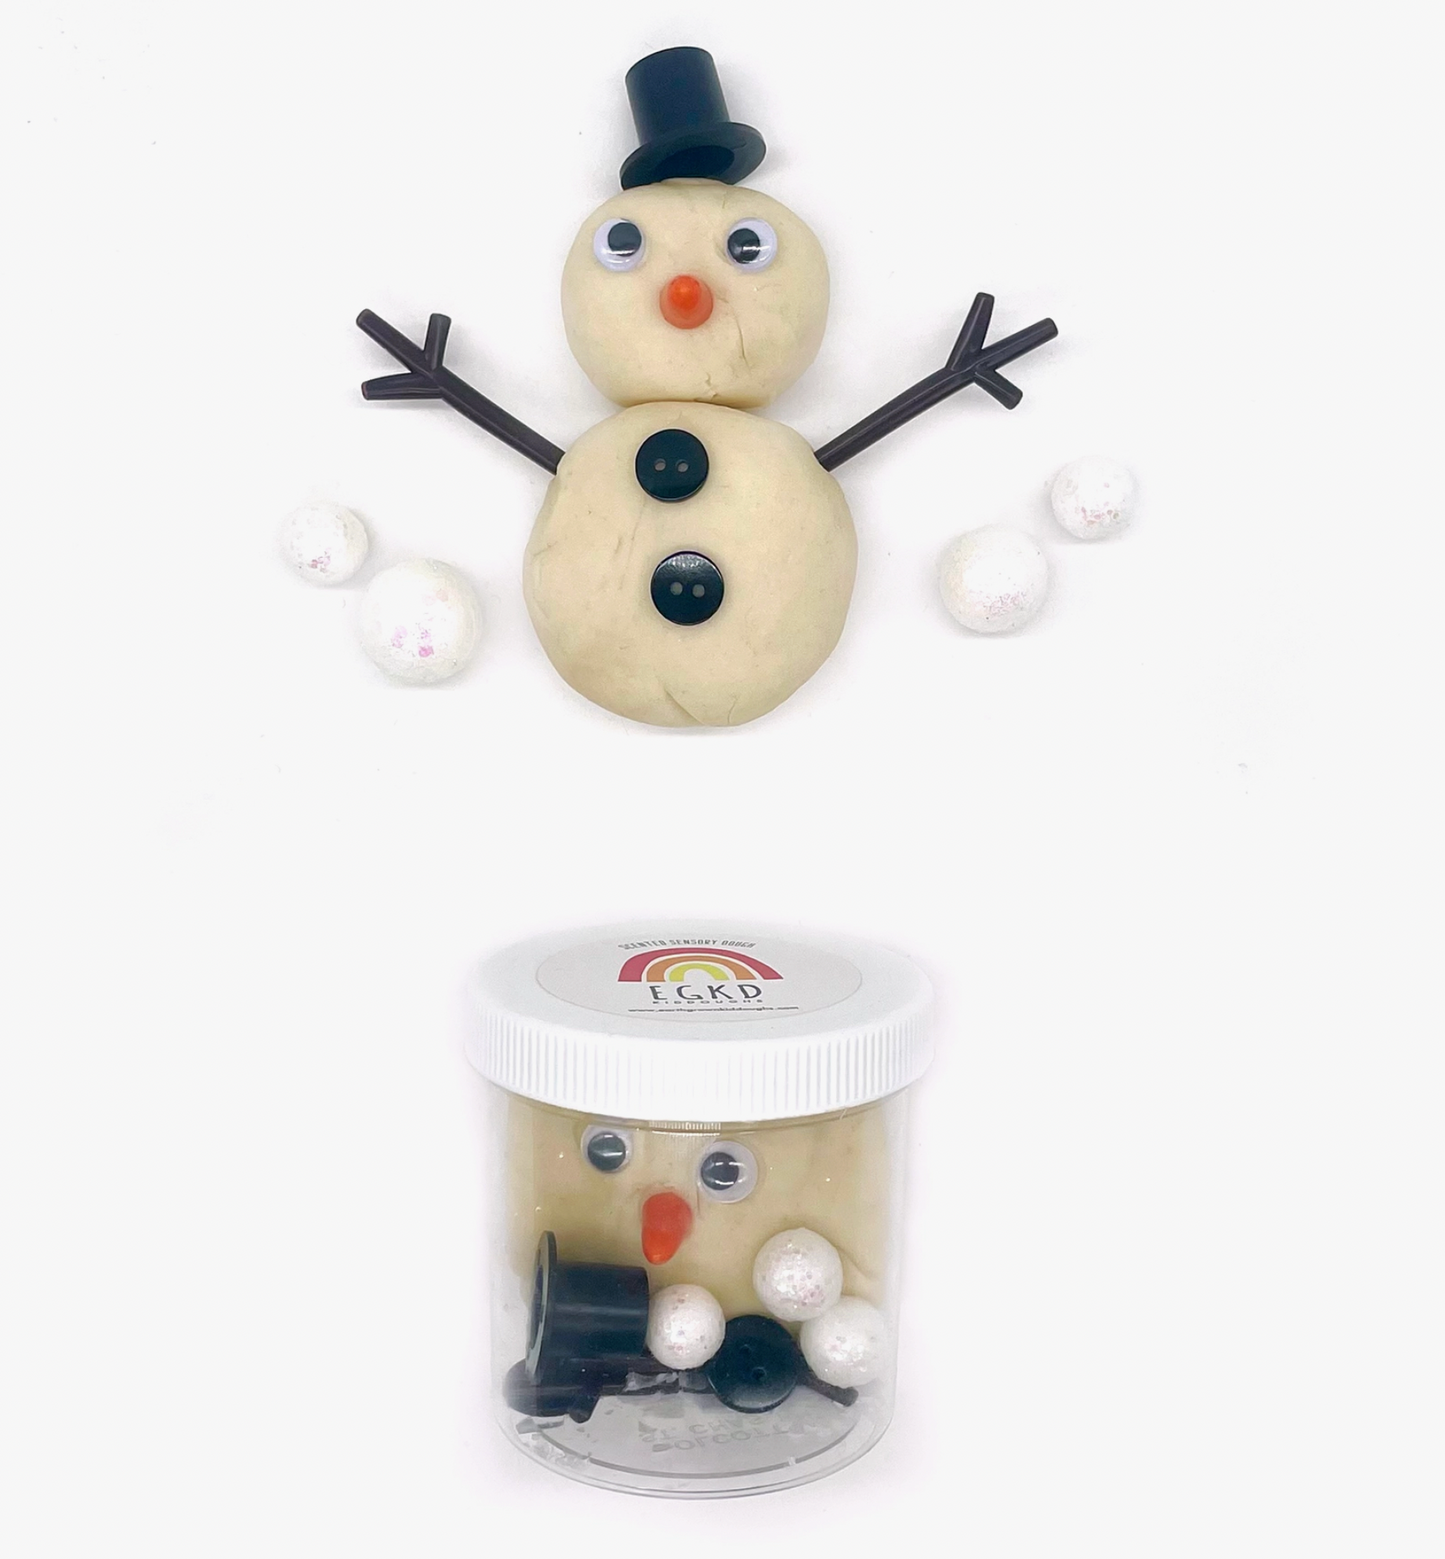 Build a Snowman - Mini Dough-To-Go Play Kit